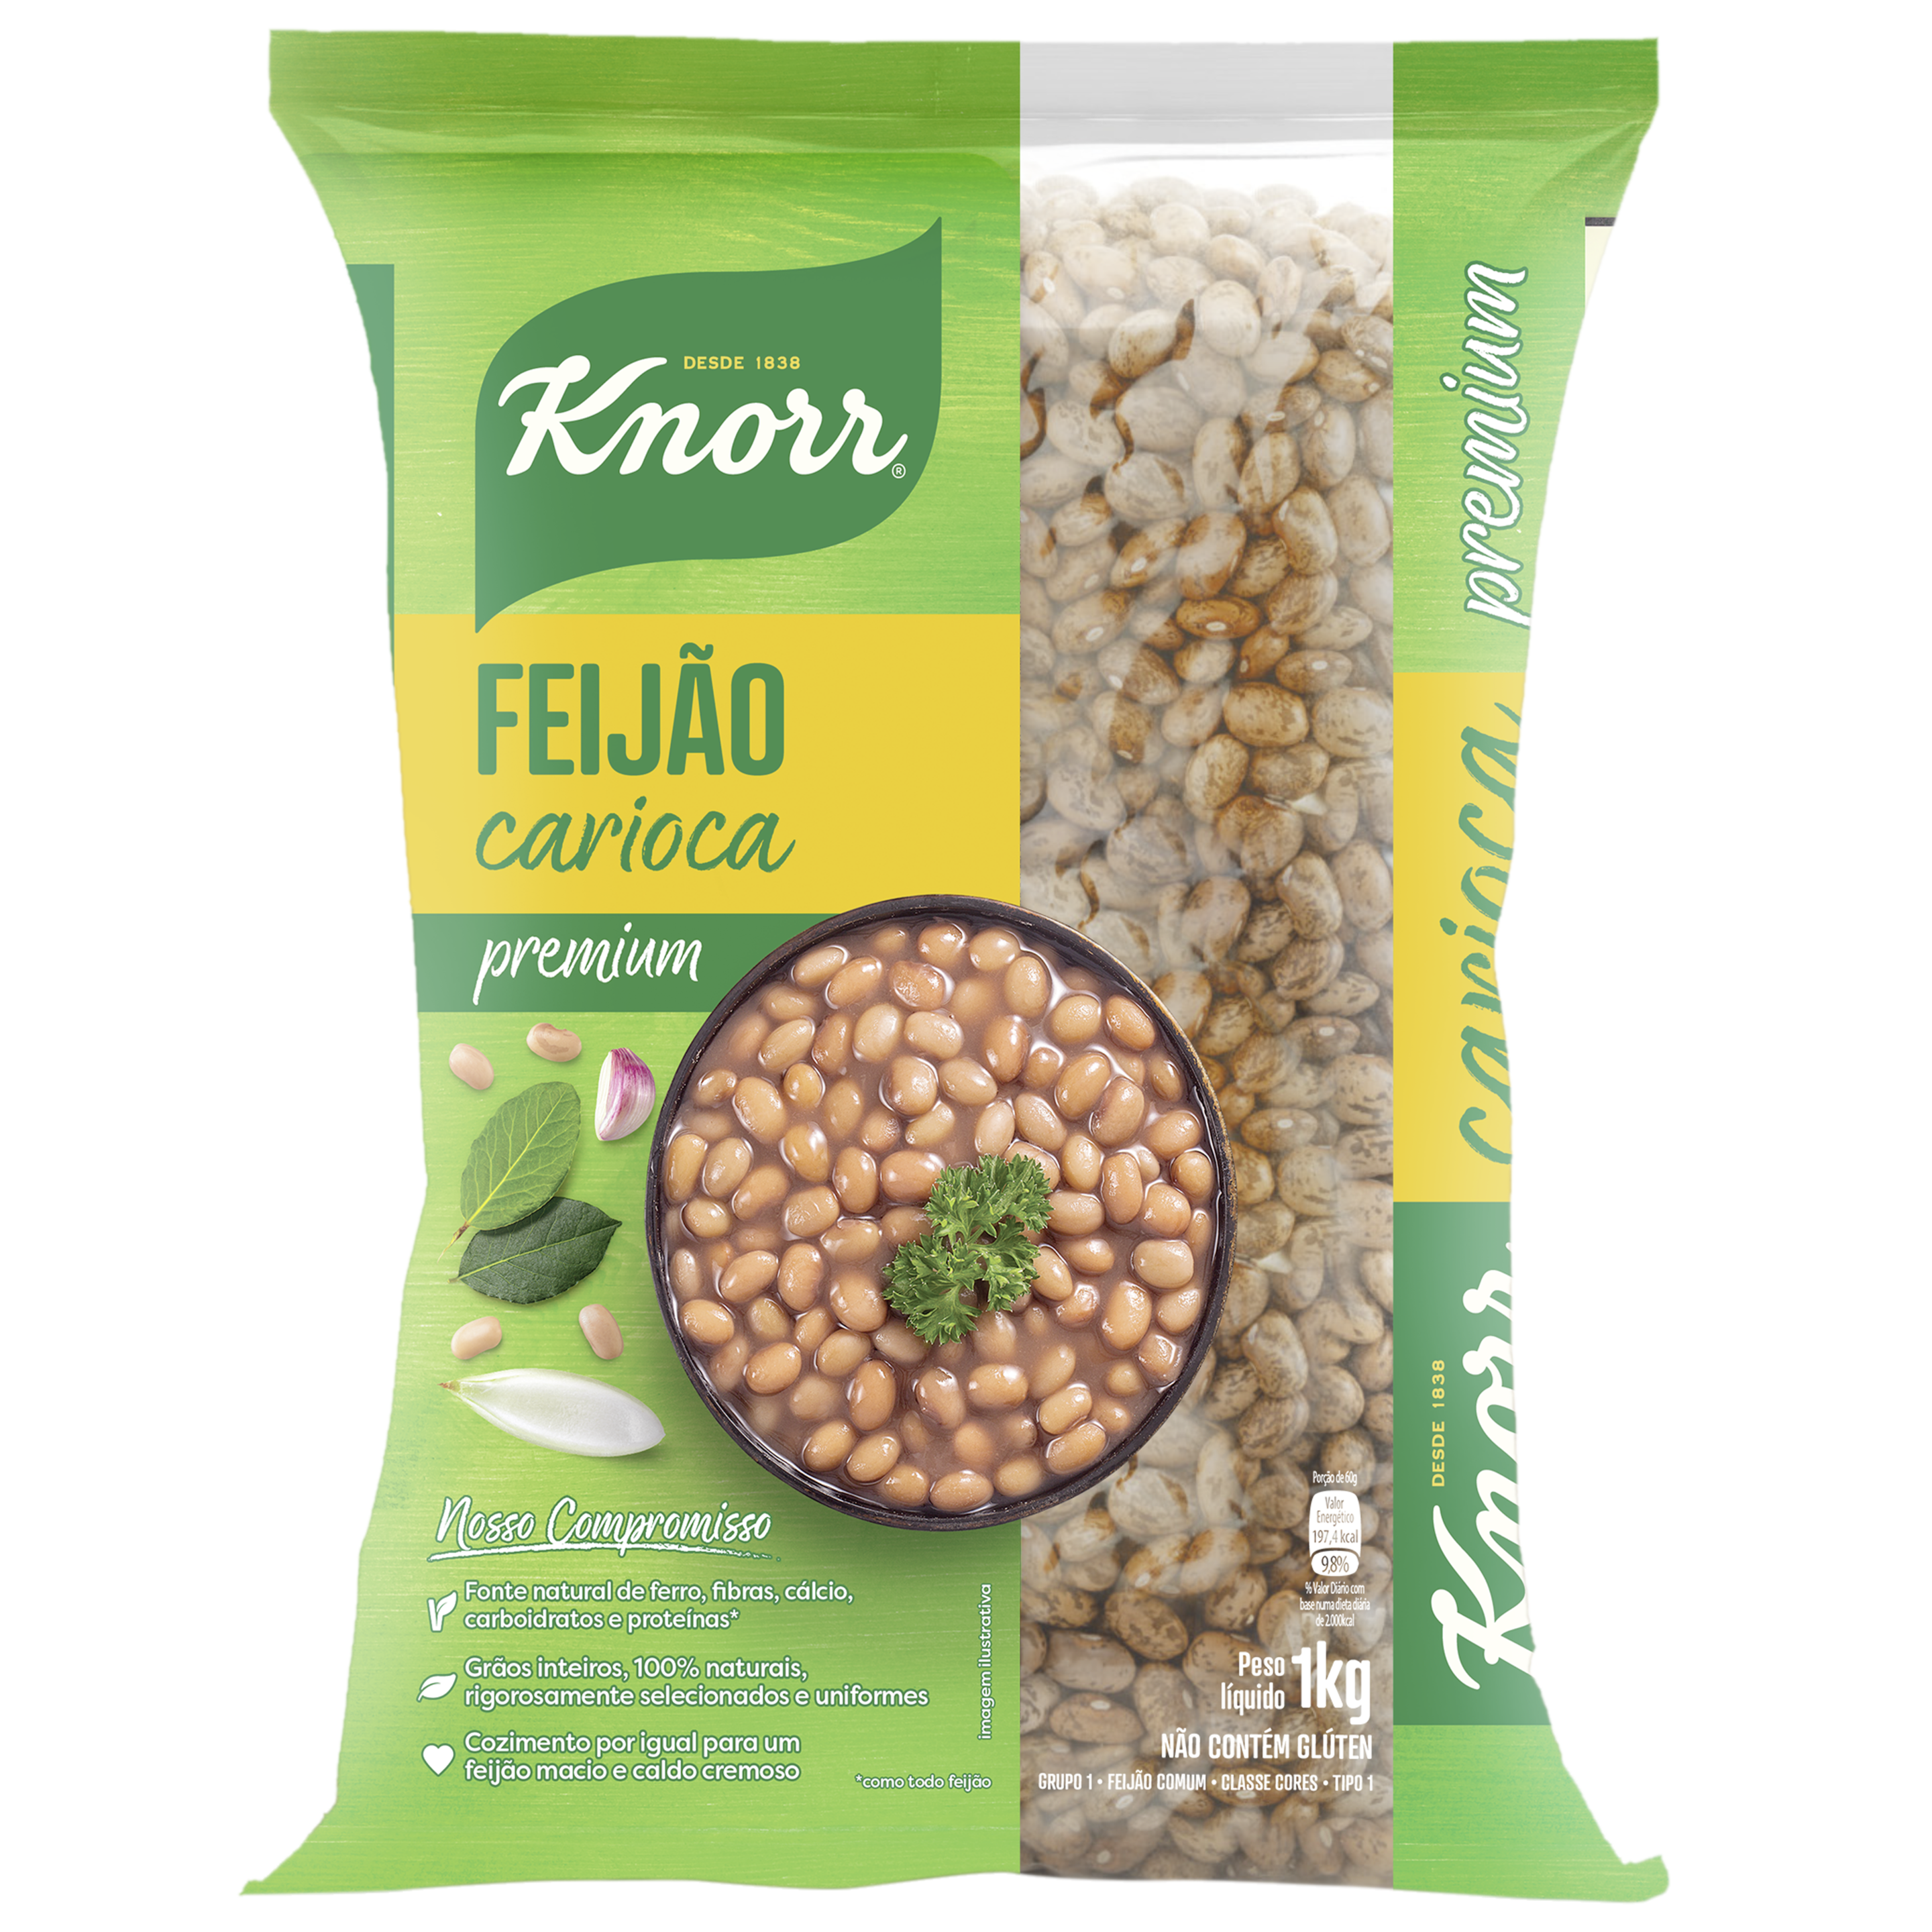 Embalagem do Feijão Carioca Knorr